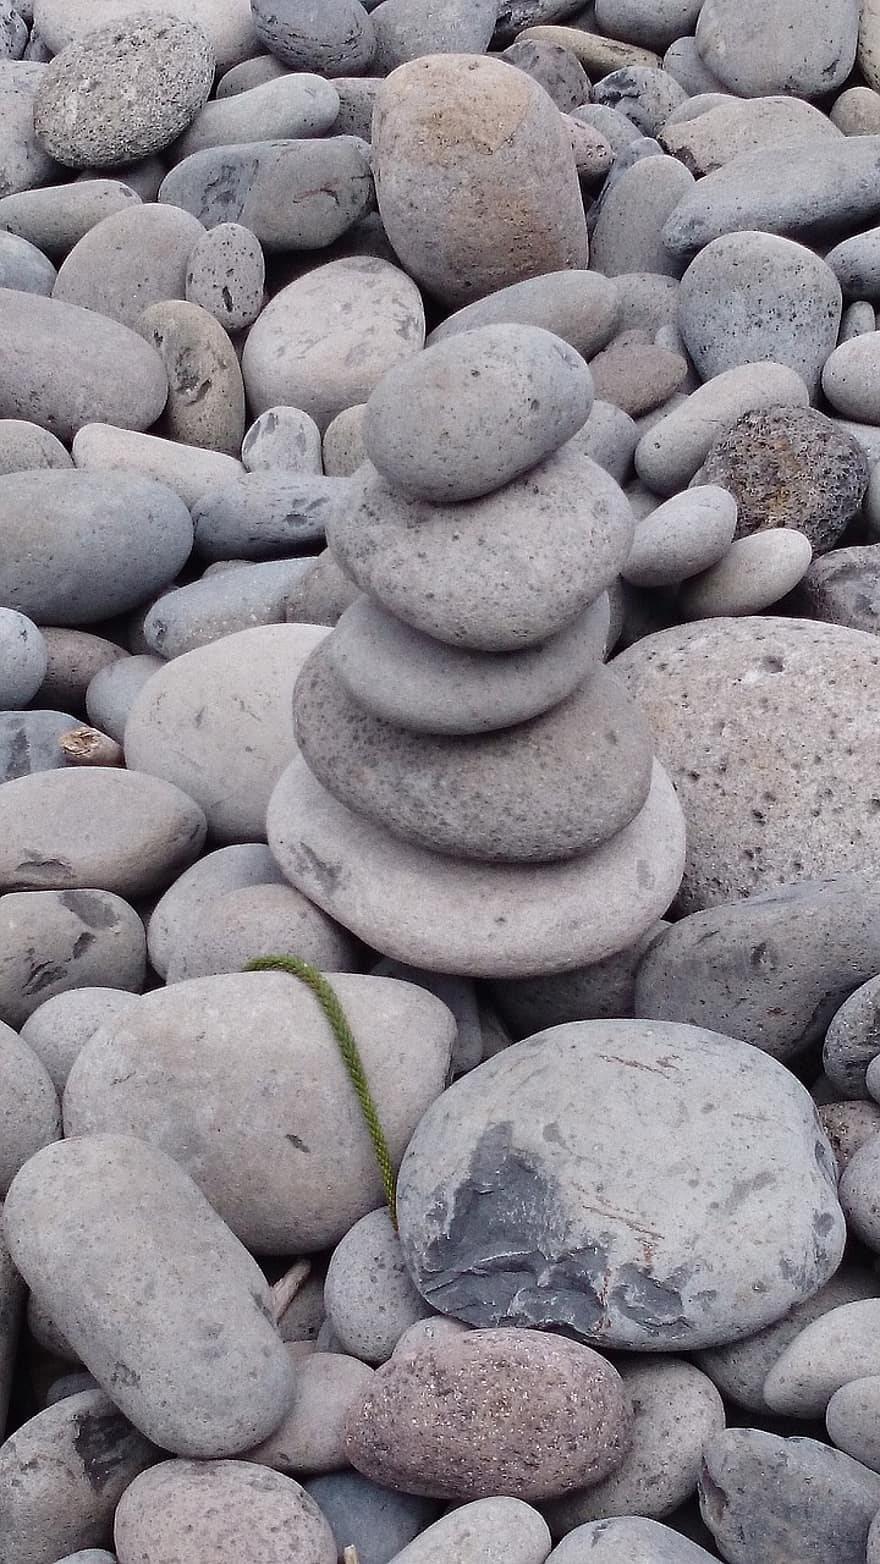 πέτρες, βράχια, ισορροπία, βότσαλα, ισορροπημένους βράχους, ισορροπημένες πέτρες, Διαλογισμός, zen, παραλία, νοημοσύνη, πνευματικότητα